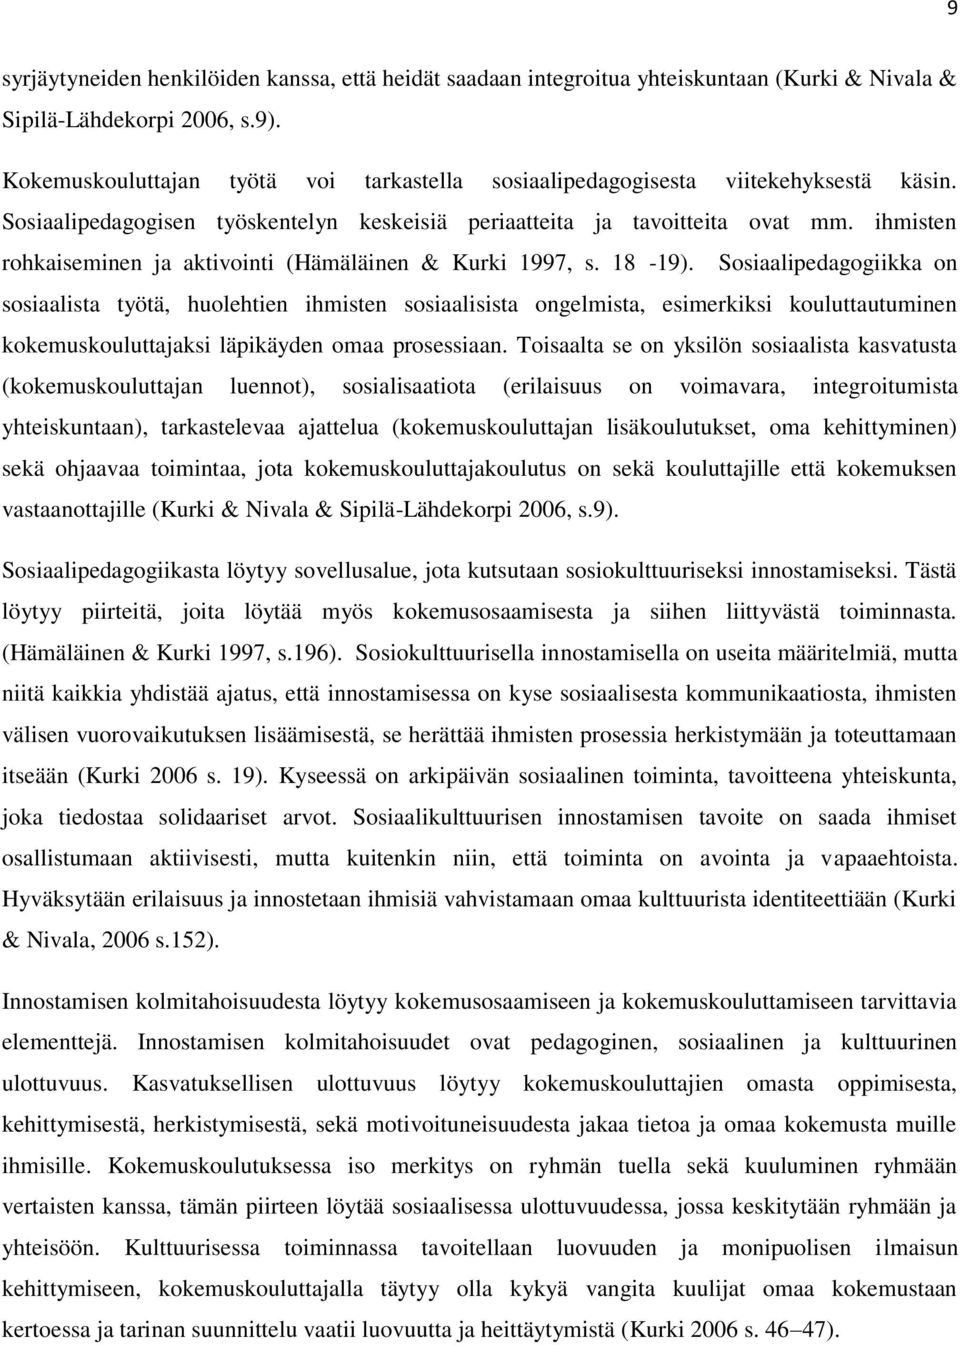 ihmisten rohkaiseminen ja aktivointi (Hämäläinen & Kurki 1997, s. 18-19).